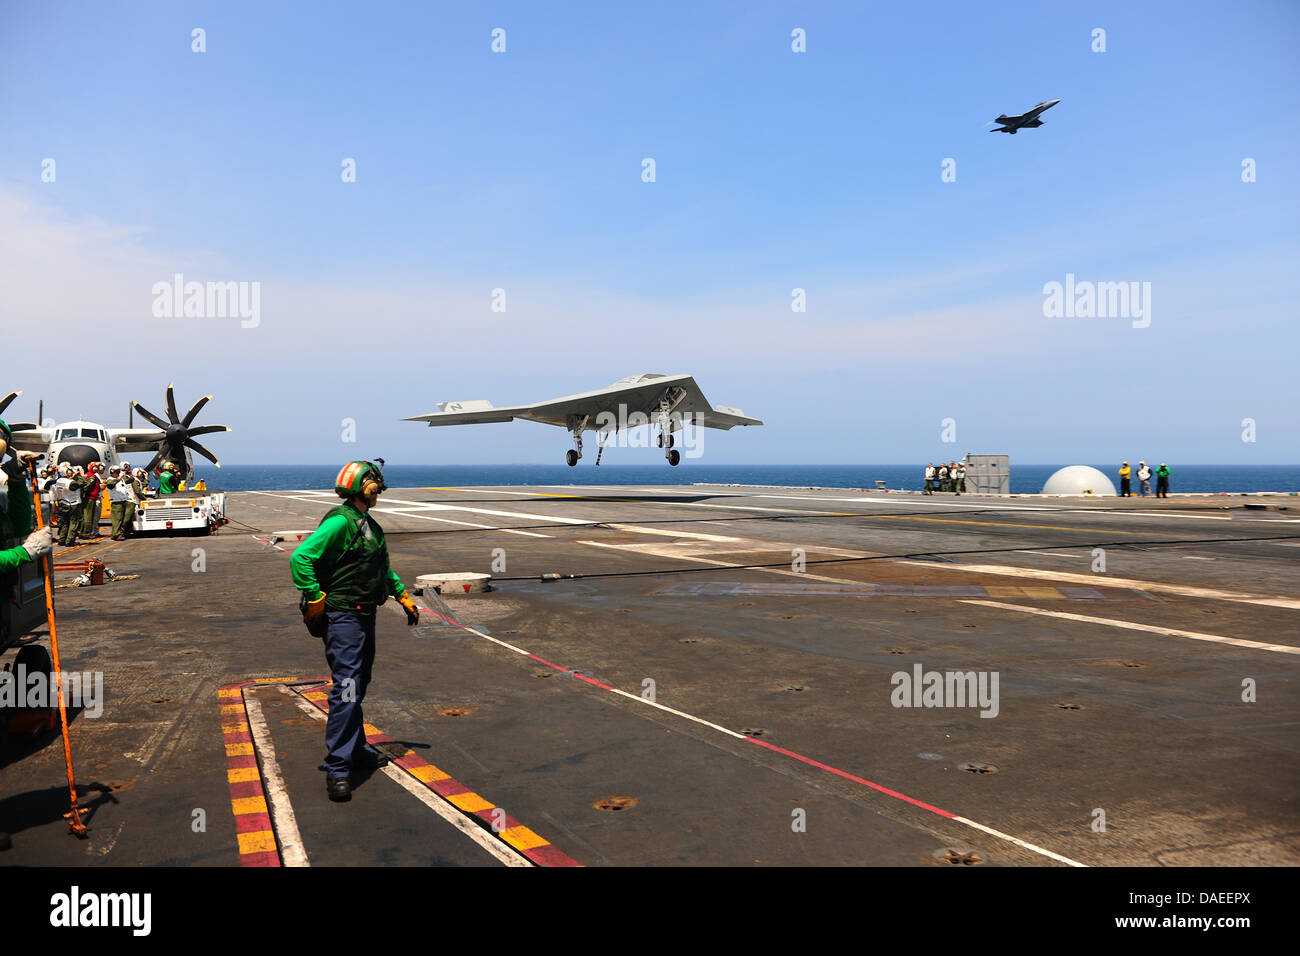 Eine US-Marine X-47 b unmanned combat Air Systems Drohne macht einen verhafteten landen auf dem Flugdeck des Flugzeugträgers USS George H.W. Bush 10. Juli 2013 in Betrieb im Atlantischen Ozean. Die Landung war das erste Mal, das eine unbemannte Flugzeuge eine verhaftete Landung auf hoher See abgeschlossen. Stockfoto